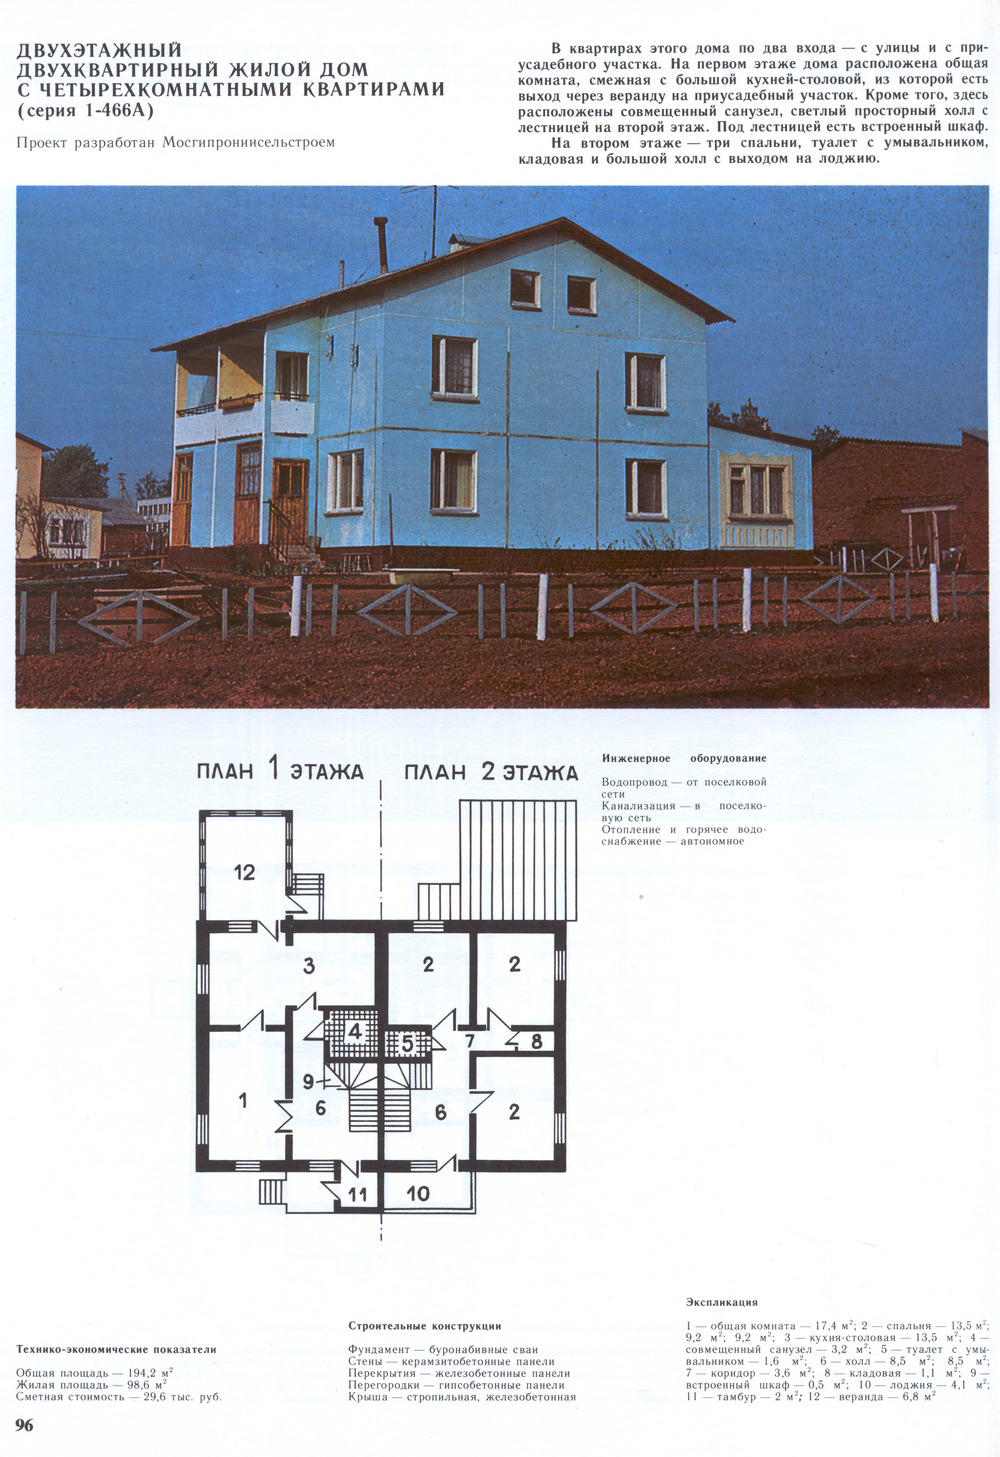 1-466А (инд. стр.) series, project Двухэтажный двухквартирный жилой дом с четырёхкомнатными квартирами — Drawings and Plans